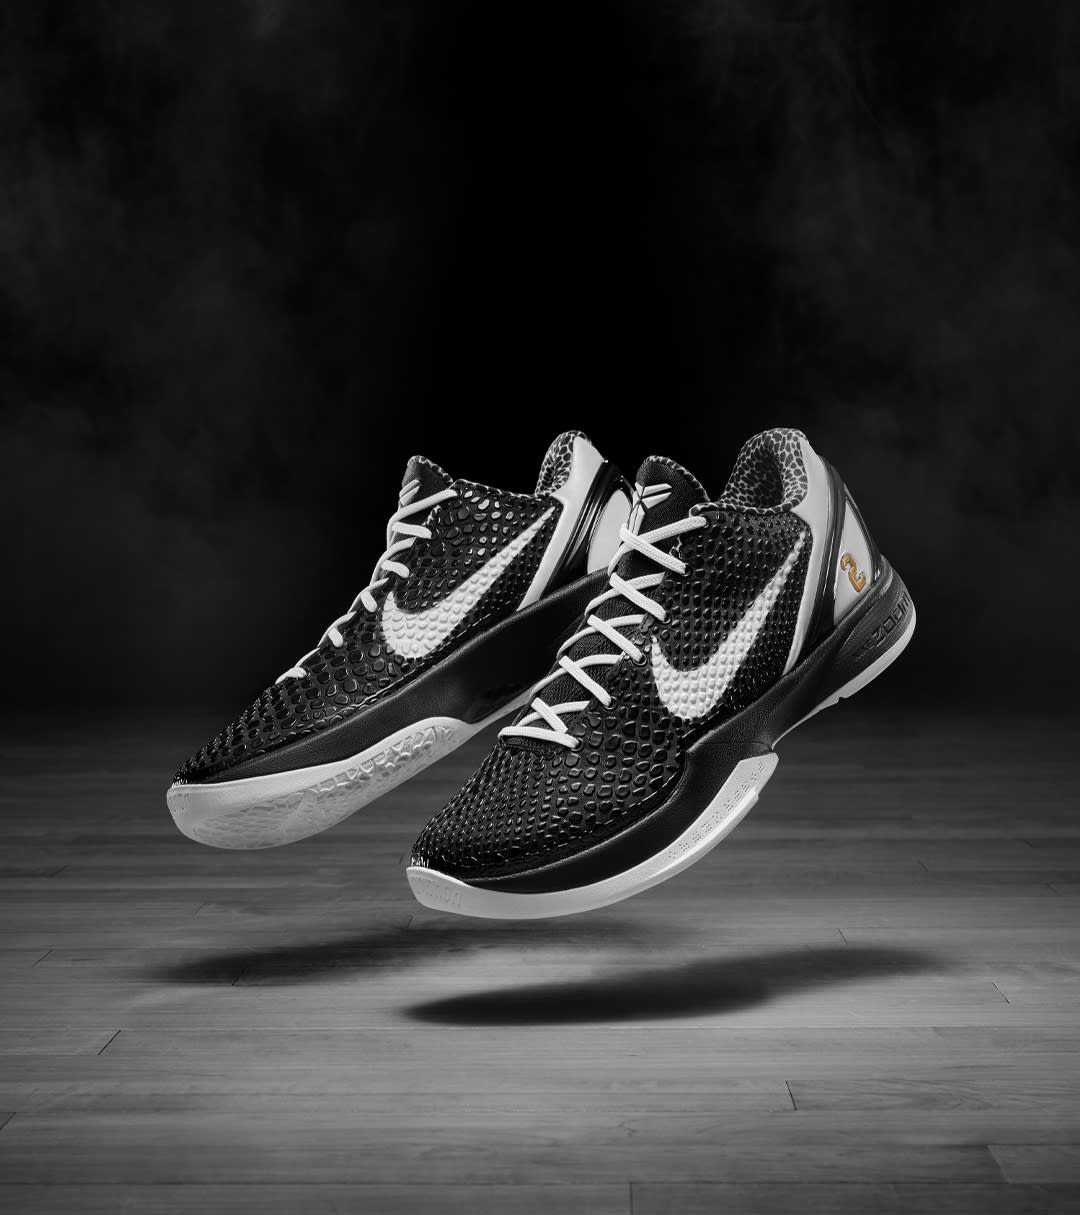 Kobe 6 kobe protro 6 mambacita Protro 'Mambacita Sweet 16' Launch Details. Nike SNKRS